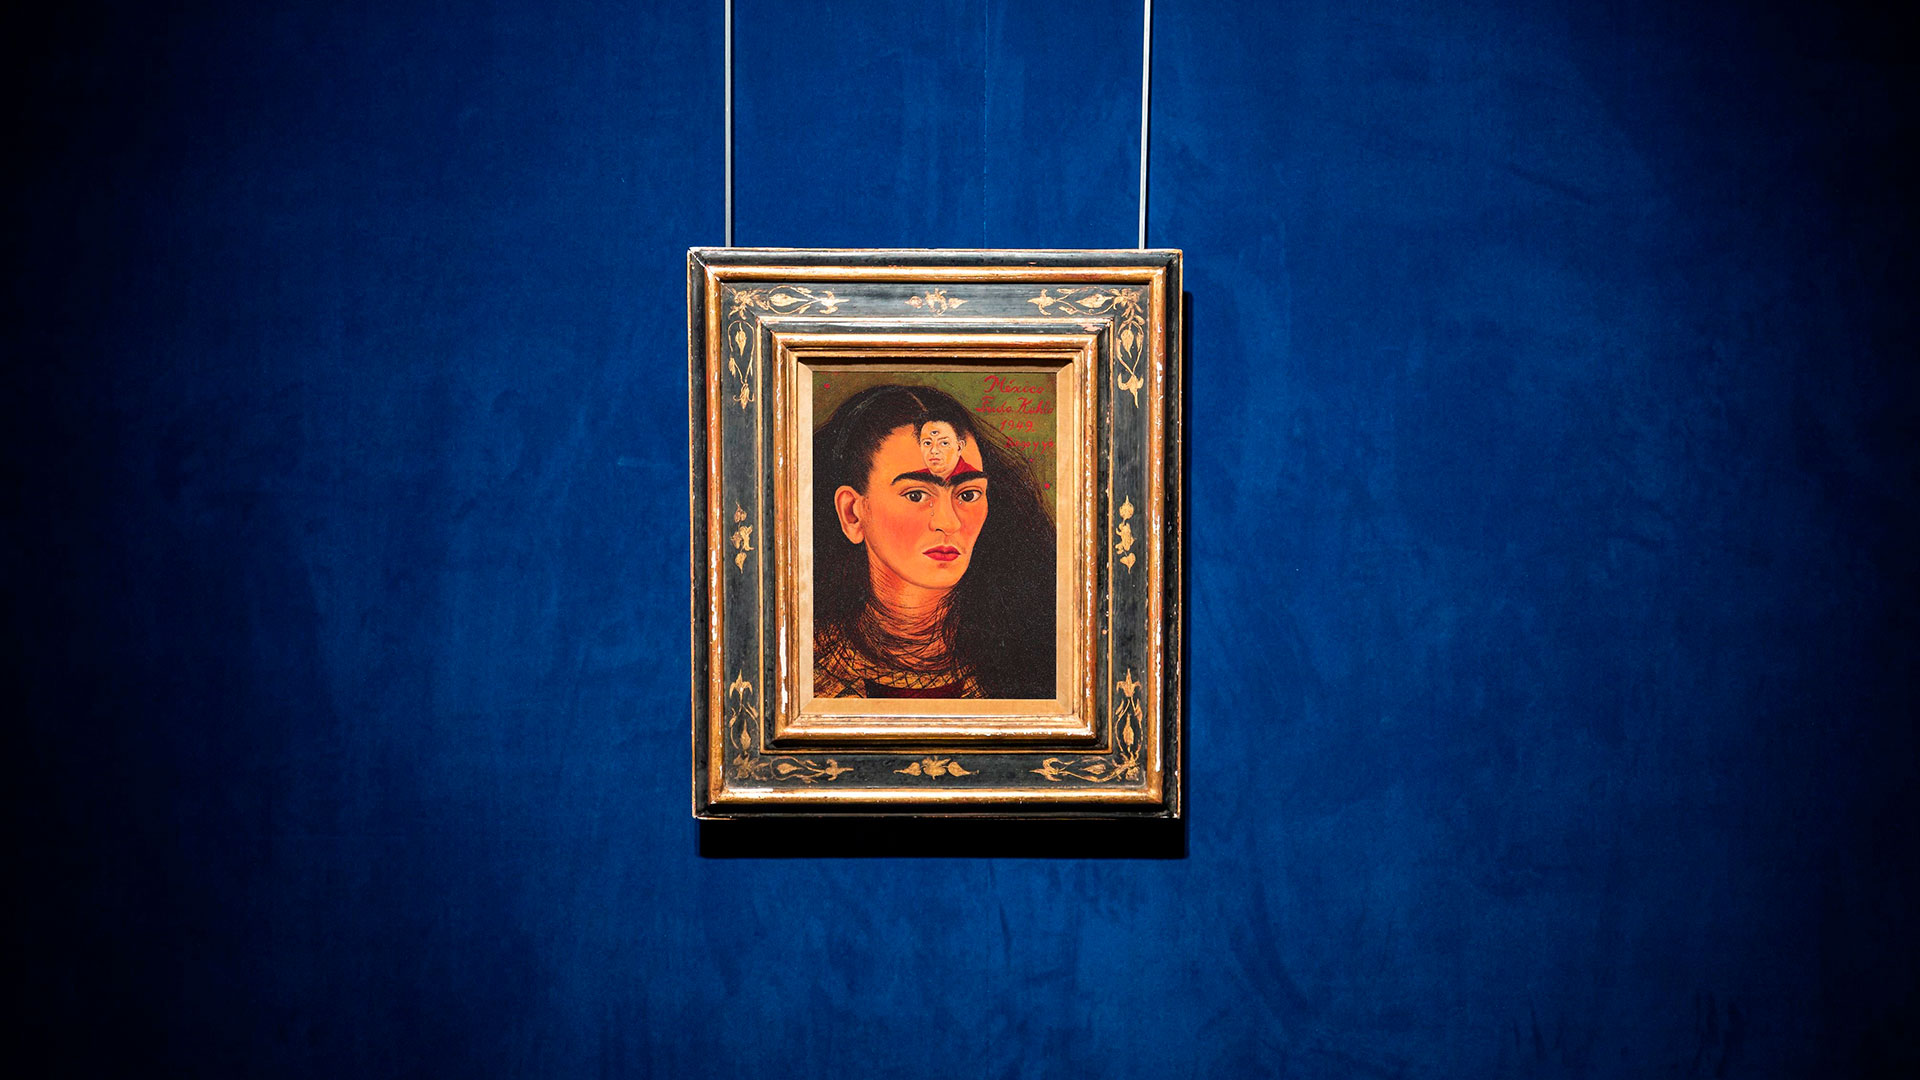 “Diego y yo”, de Frida Kahlo: la obra más cara del arte latinoamericano se exhibirá en Malba en 2022